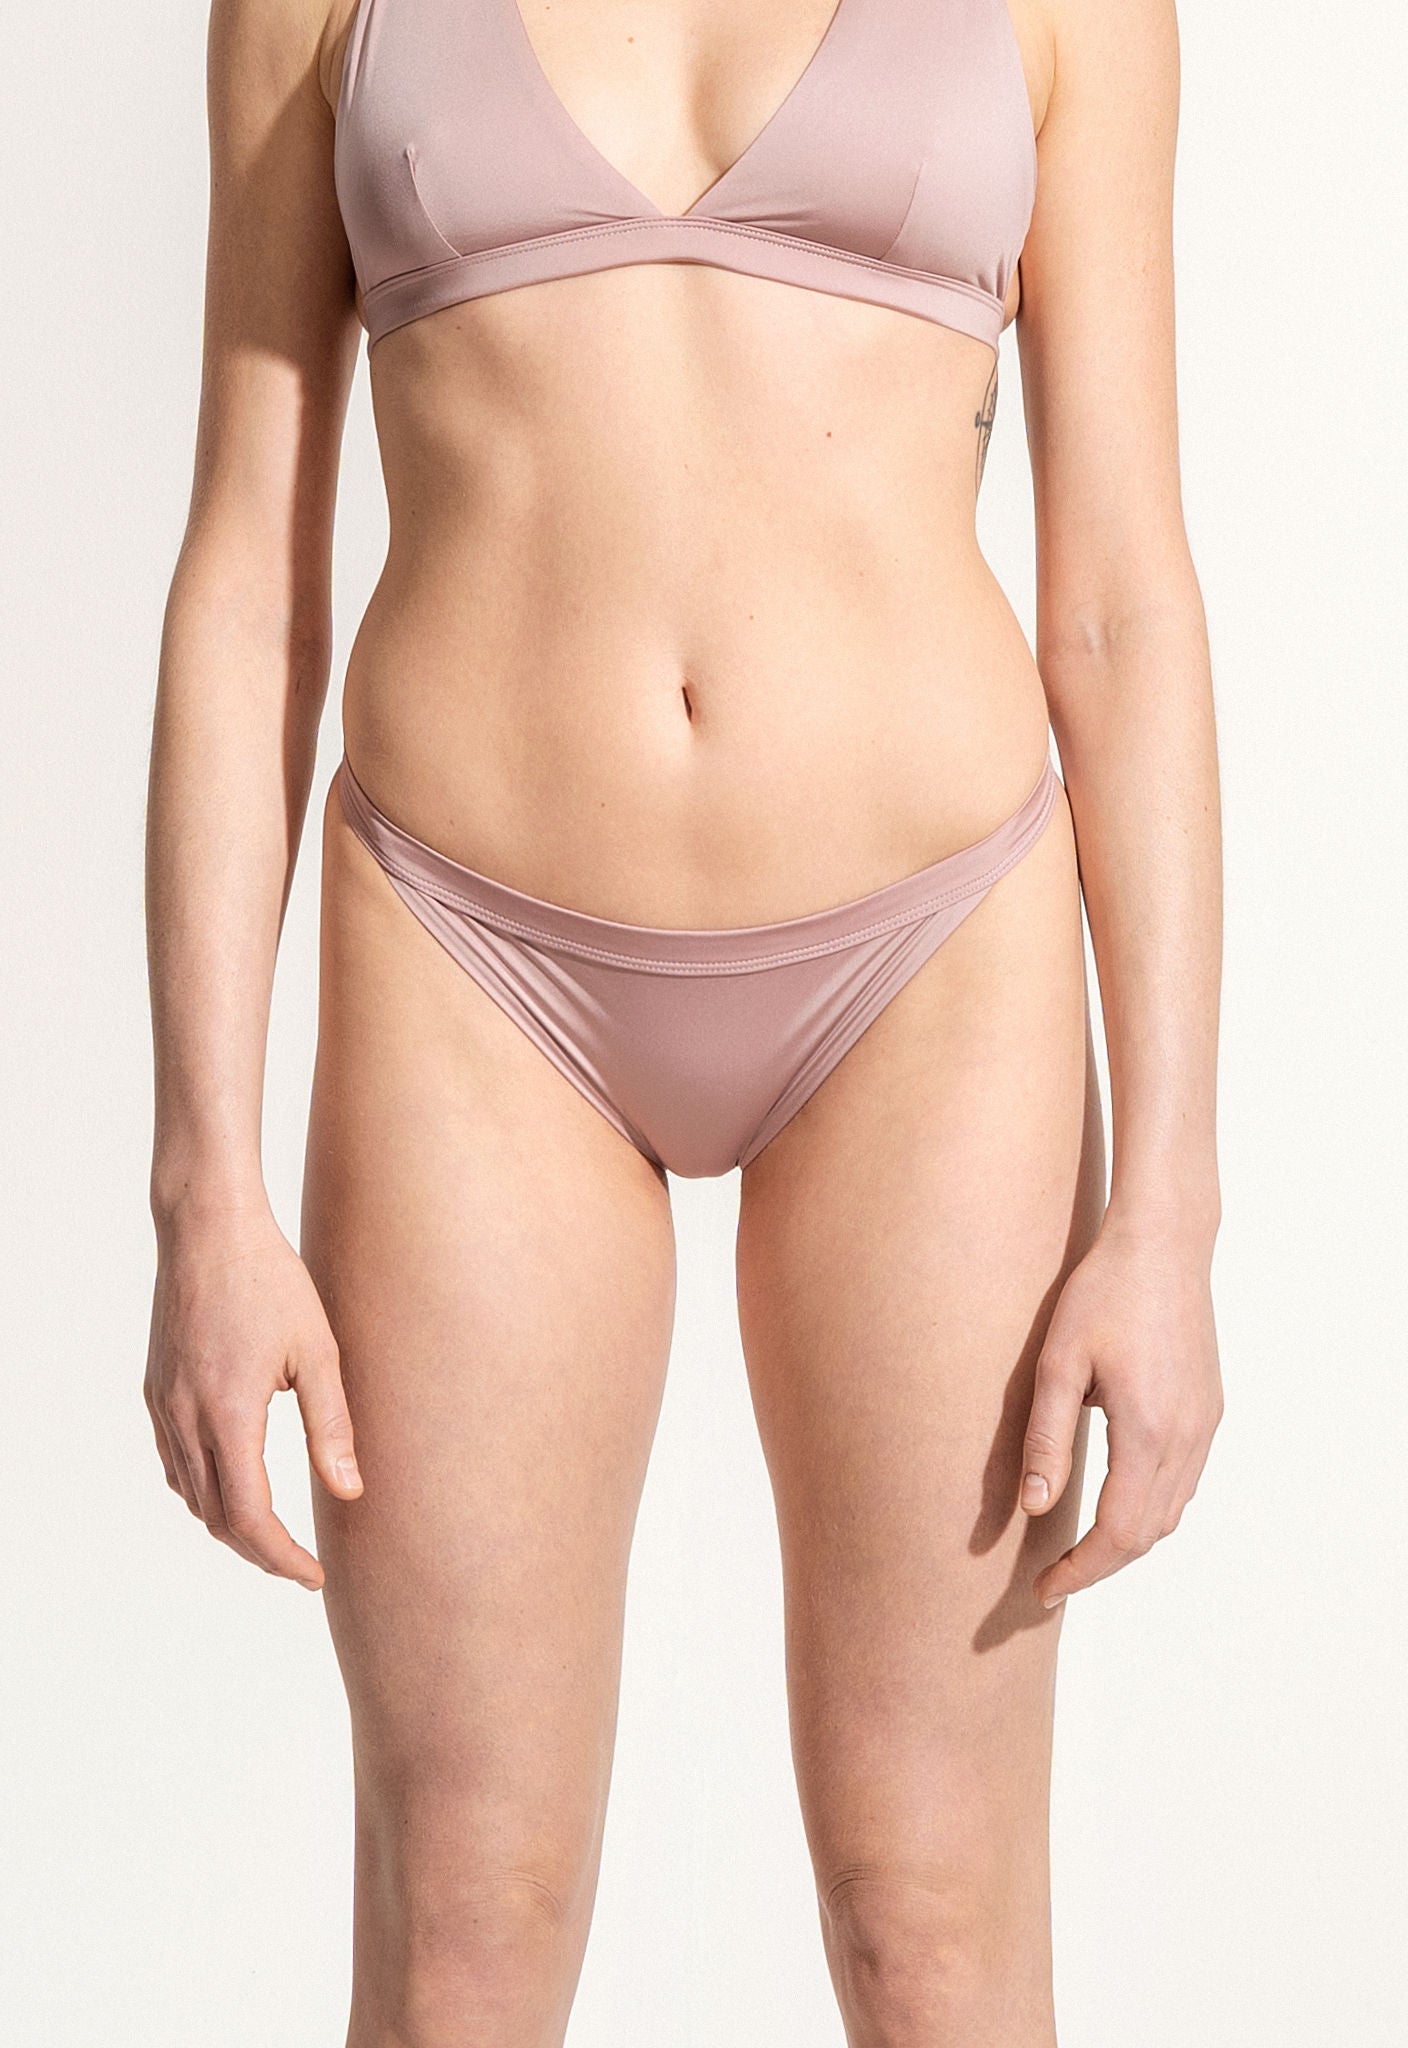 Bikini Bottom "Rio" in virginia pink